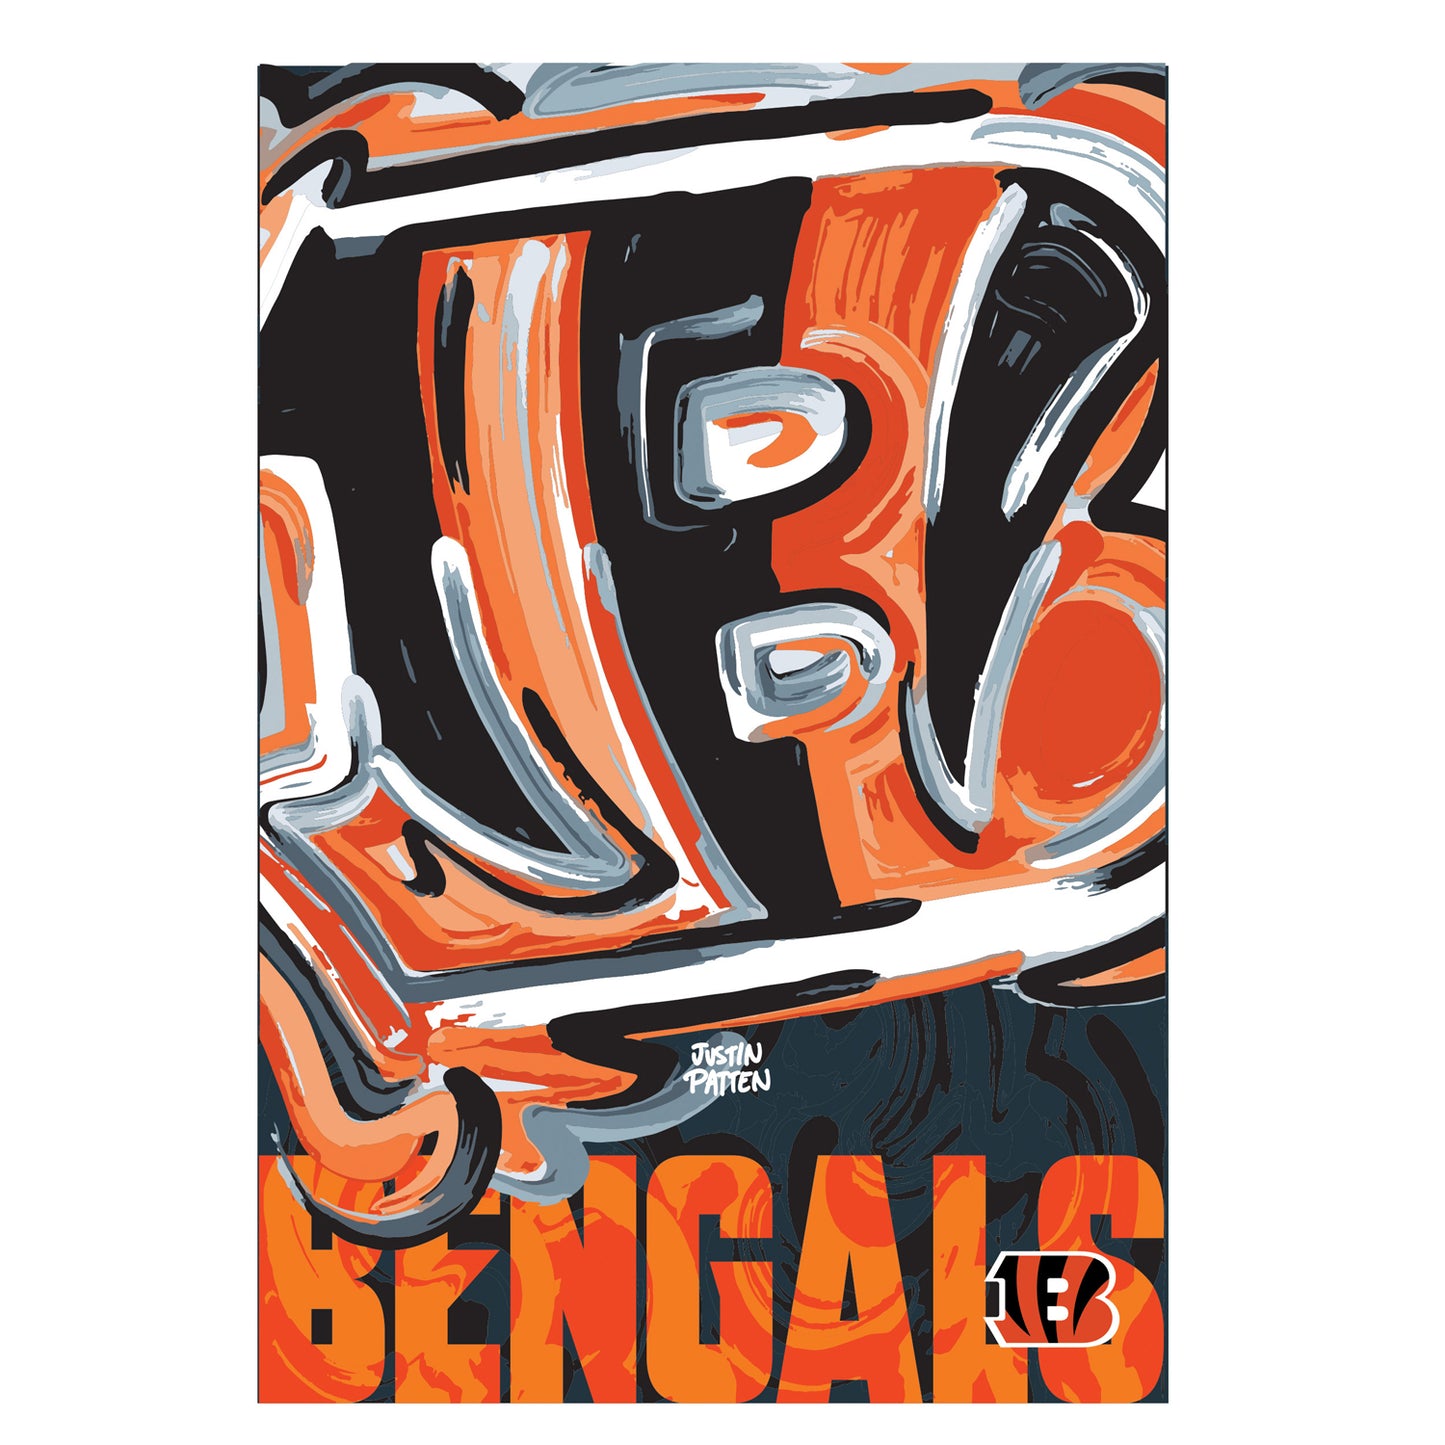 Cincinnati Bengals Garden Flag 12" x 18" by Justin Patten